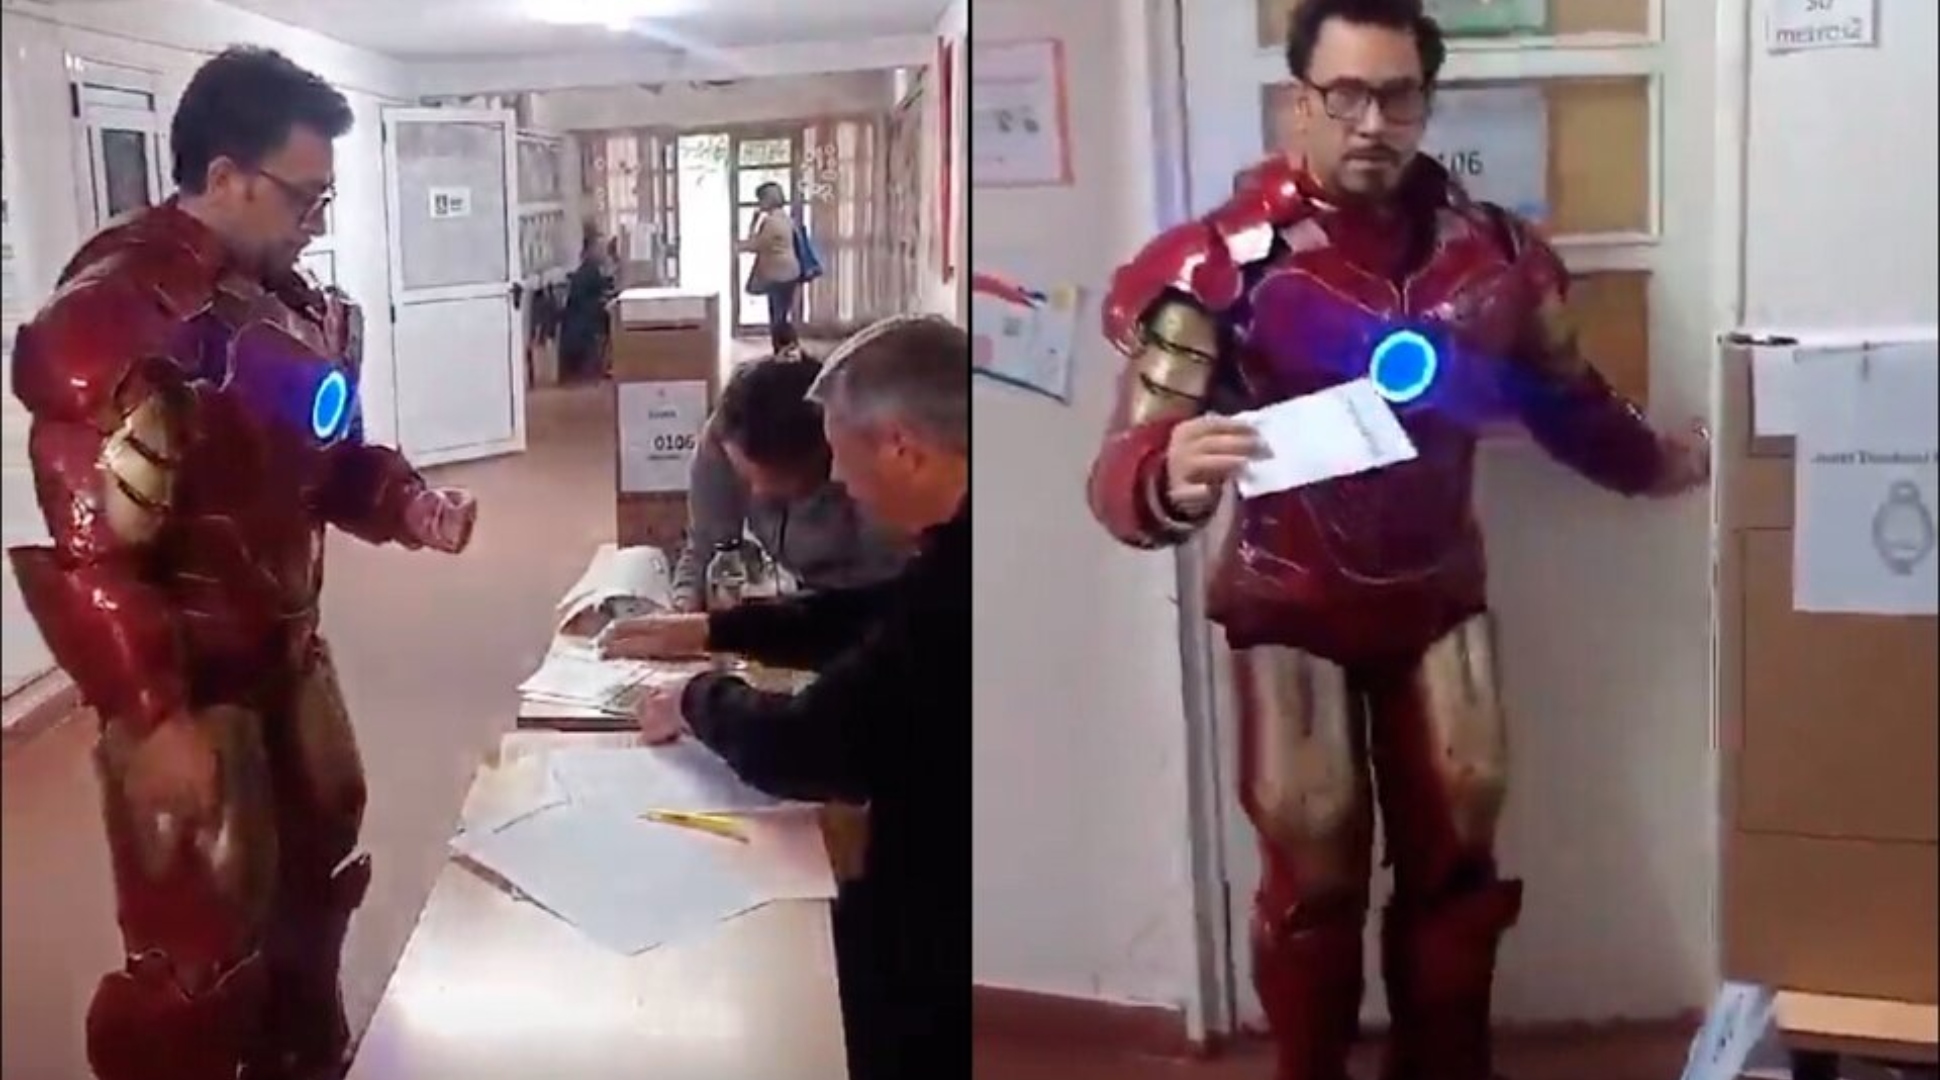 De pelcula apareci Iron Man a votar en una escuela - Canal 9 Televida  Mendoza